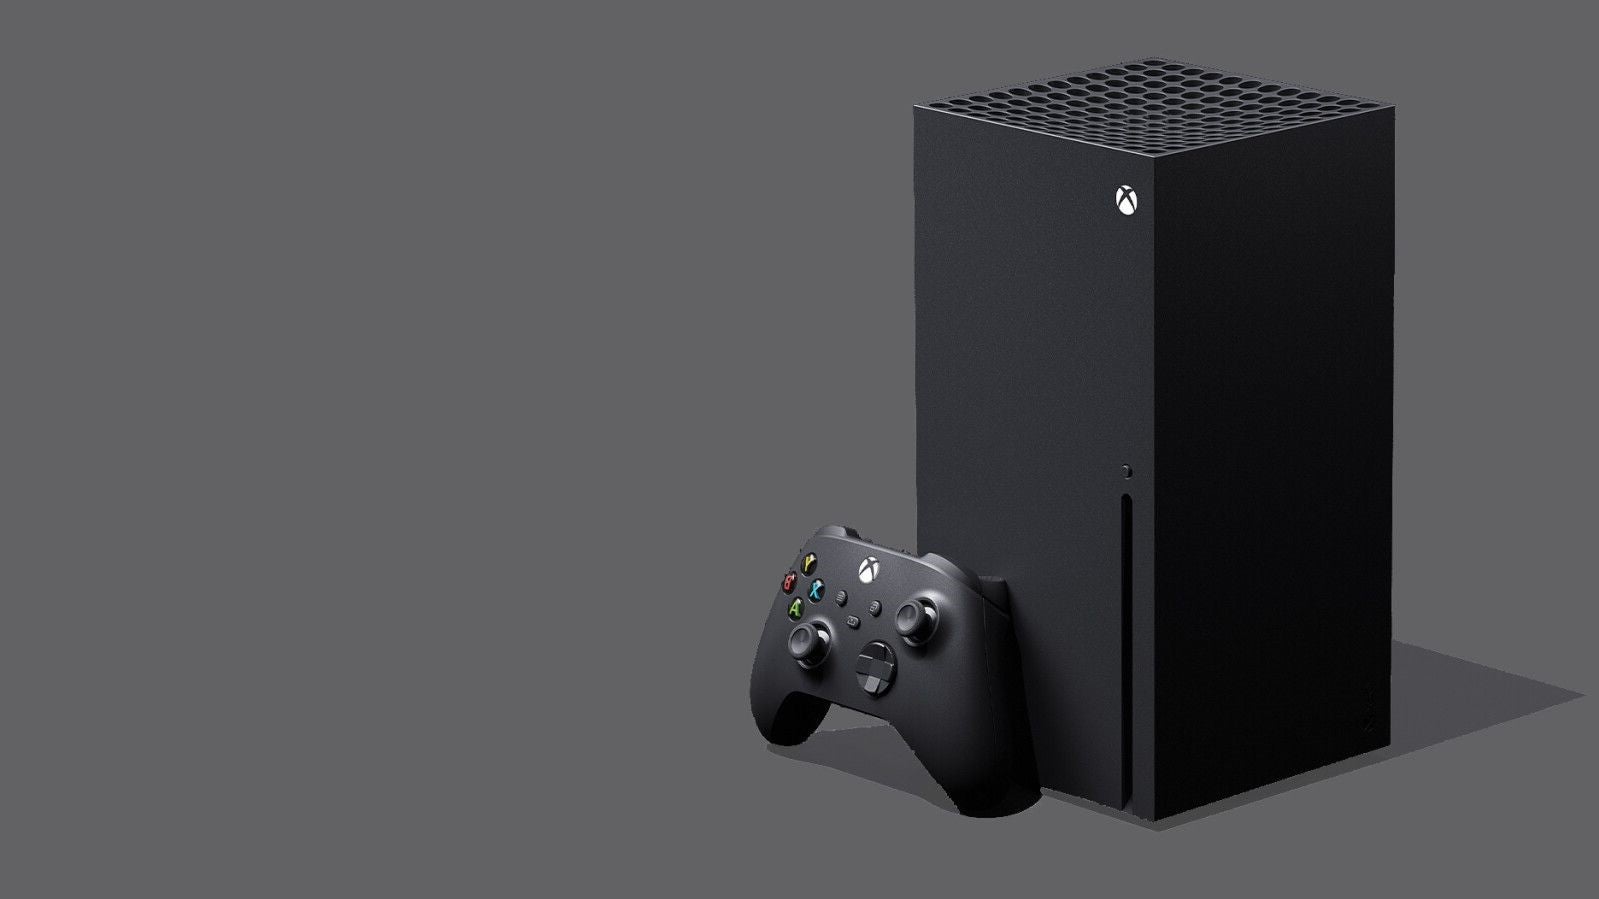 Bilder zu Verbesserte Xbox Series X? Microsoft arbeitet angeblich an einem neuen Chip für die Konsole